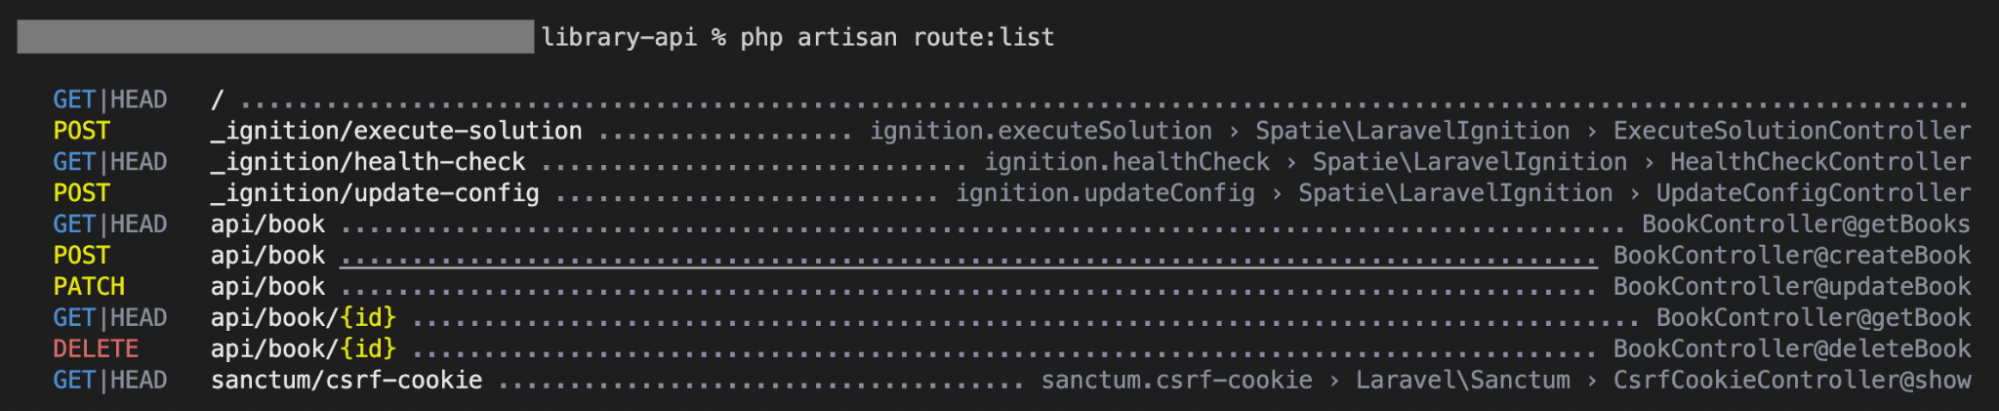 De terminal geeft de "php artisan route" weer: